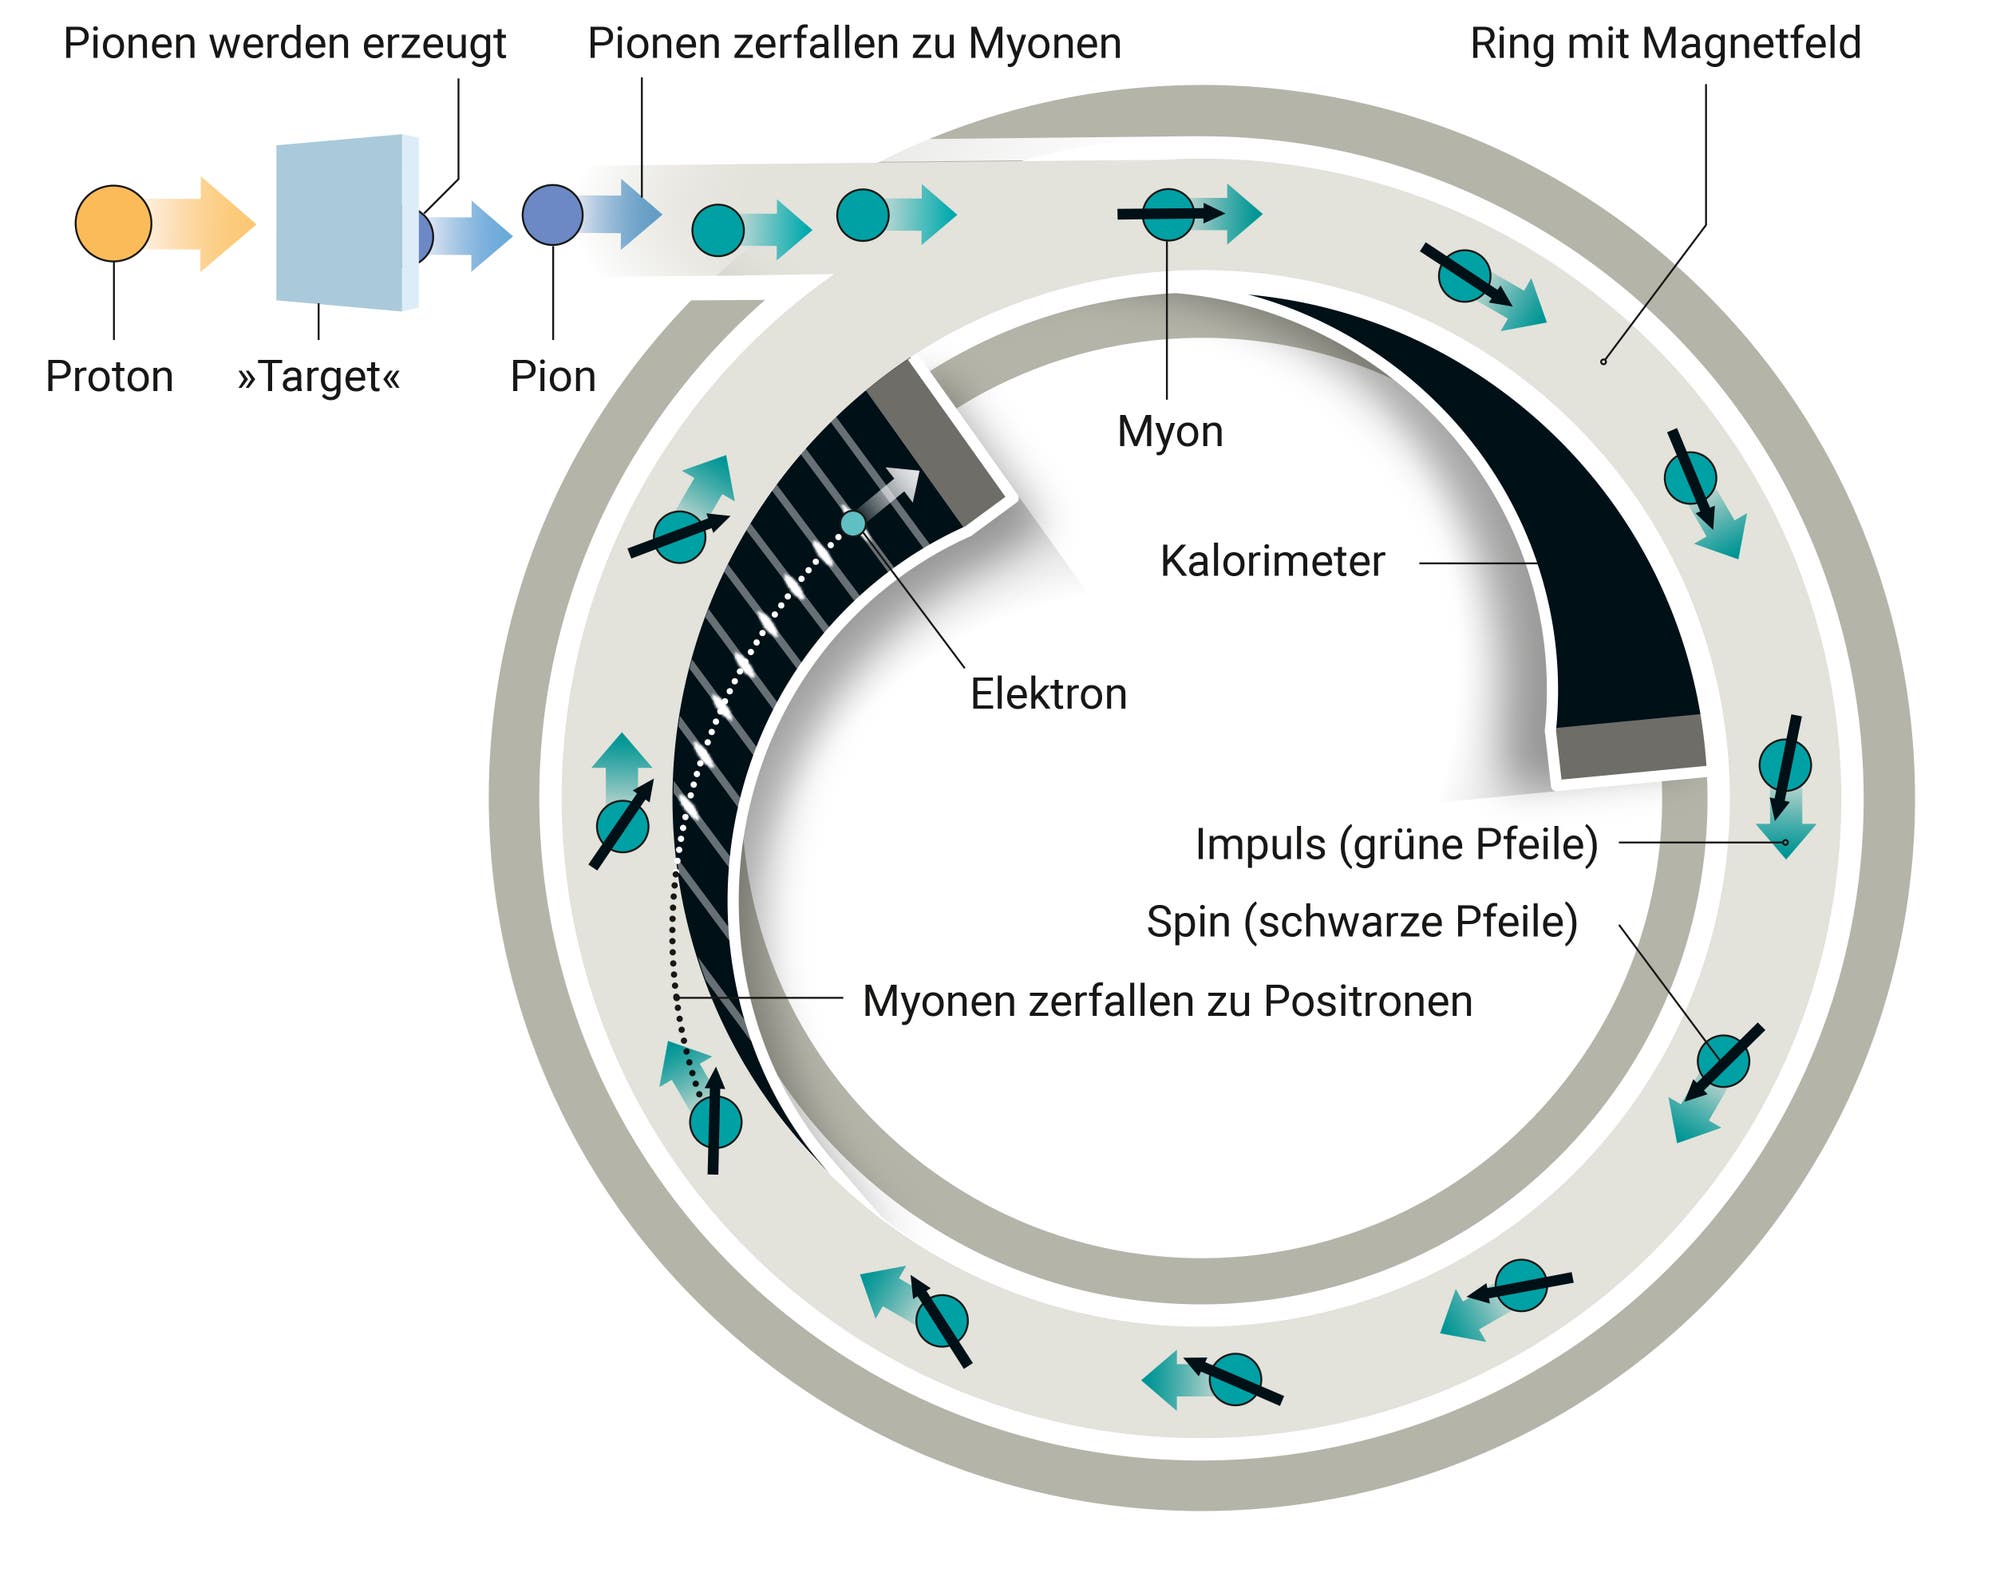 Illustration des g-2-Experiments: Während sie im Kreis laufen, zerfallen die Myonen  zu Positronen. Deren Energie wird mit Kalorimetern gemessen, und sie hängt von der Richtung des Spins der Myonen ab.